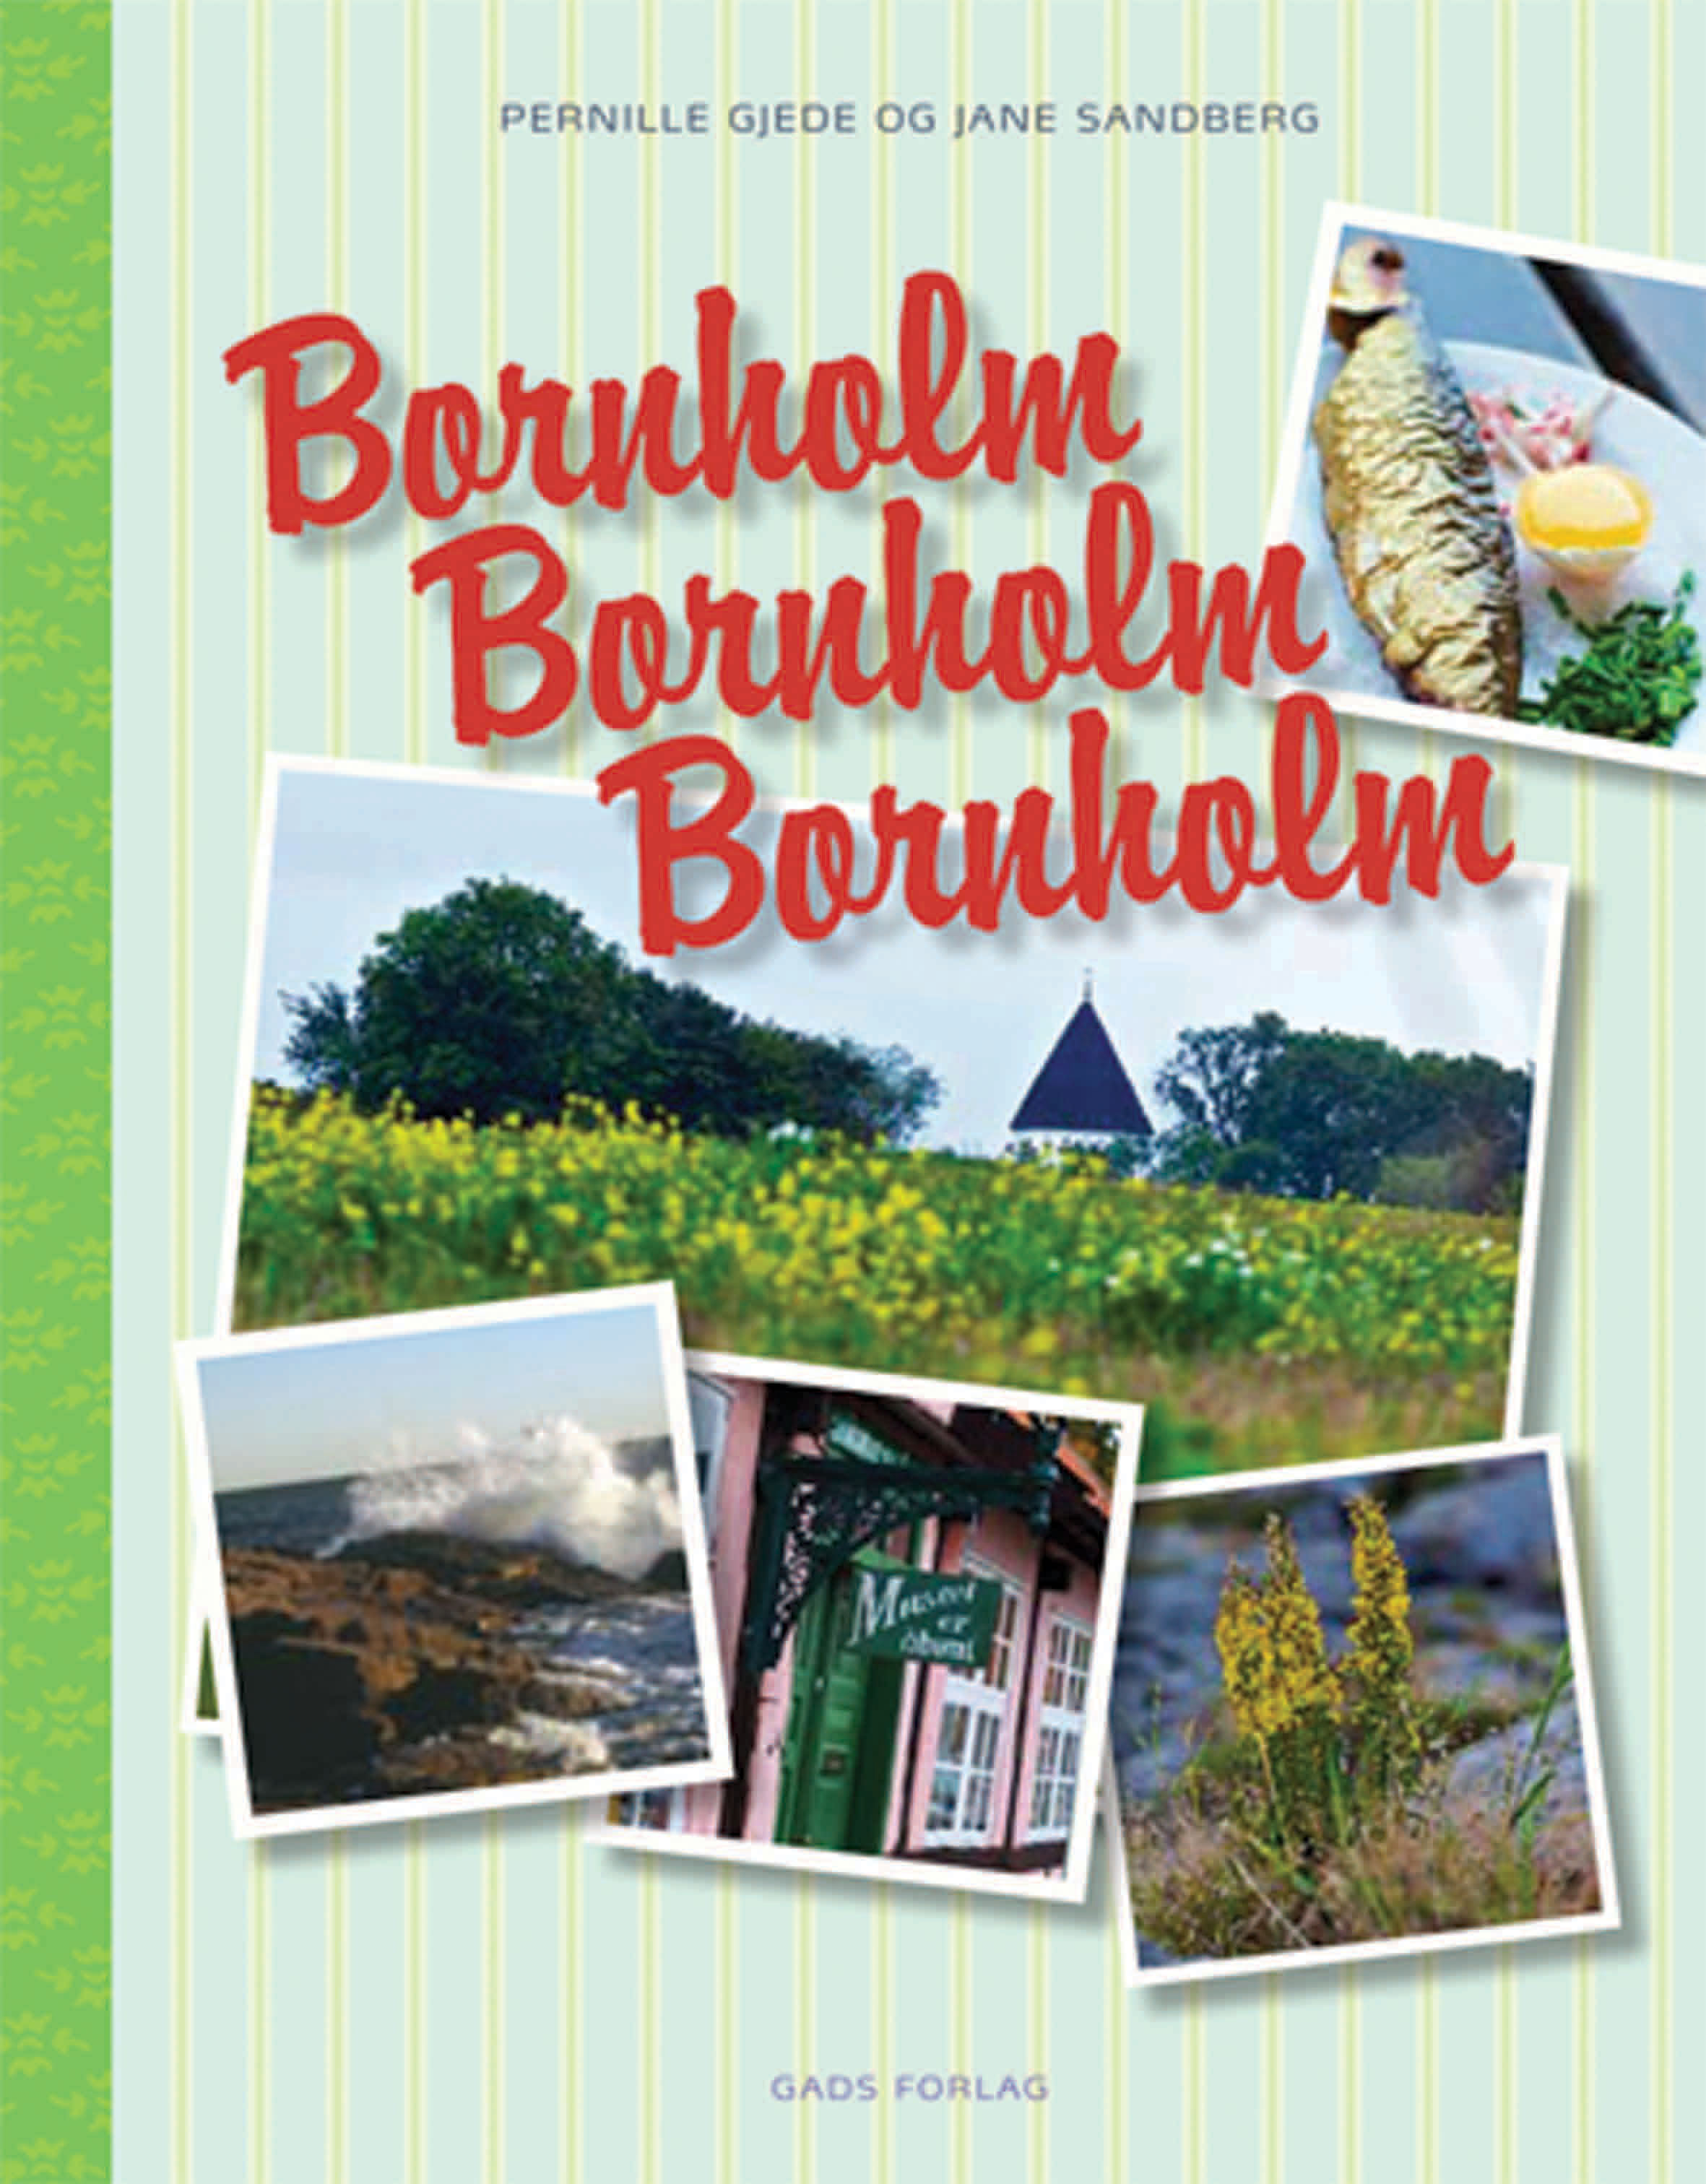 Bornholm, Bornholm, Bornholm